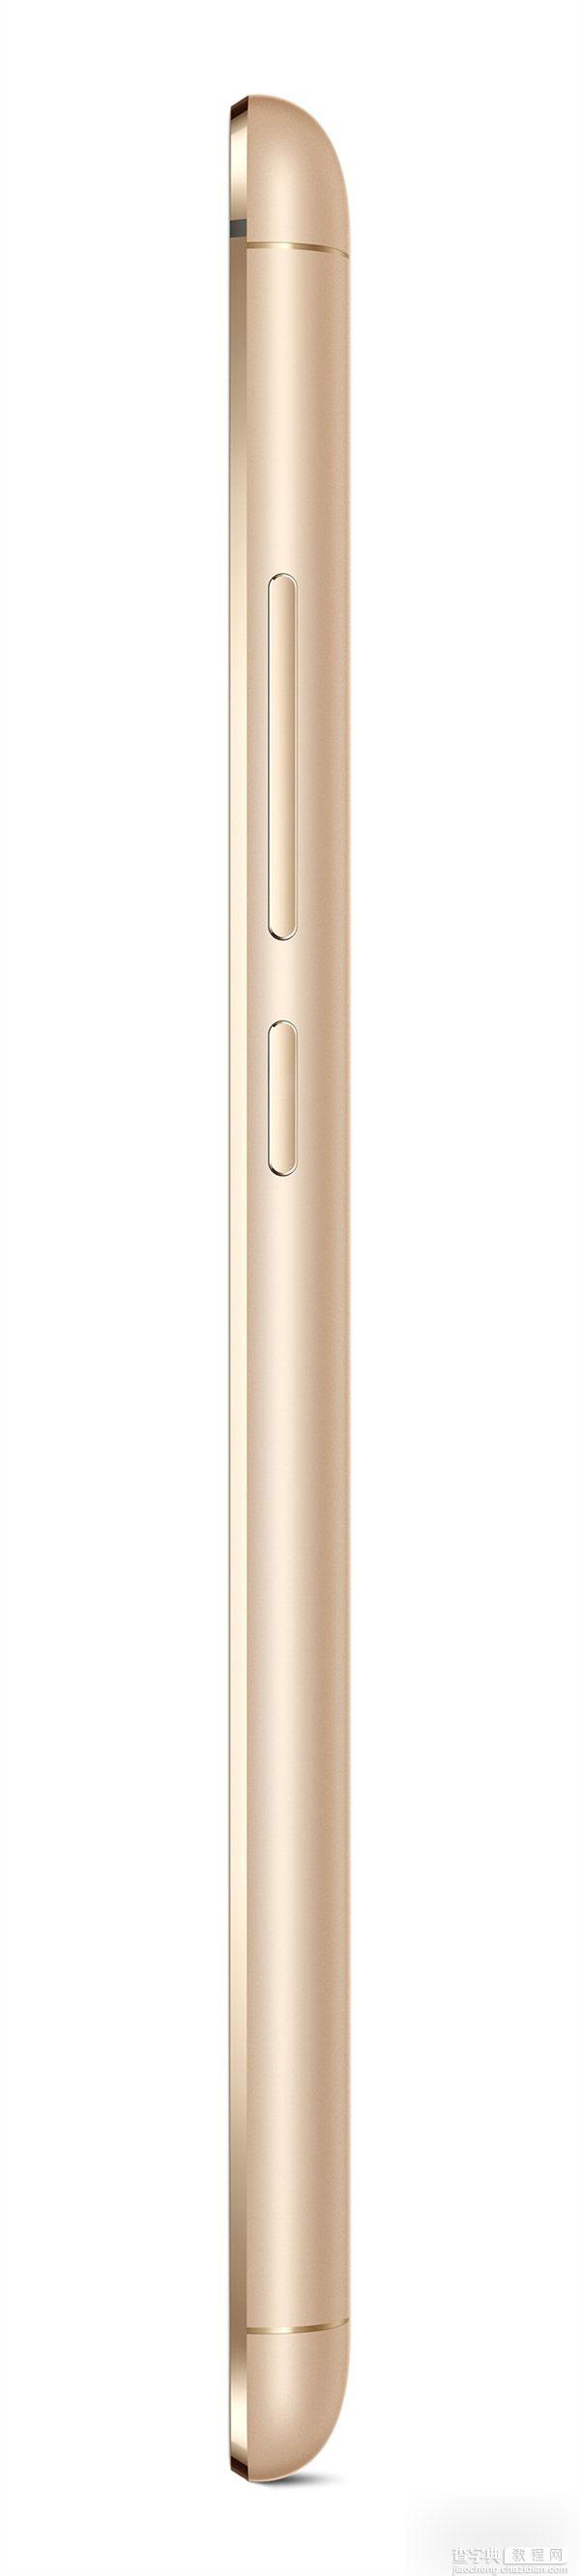 魅族MX5手机的官方高清图赏 全金属机身35